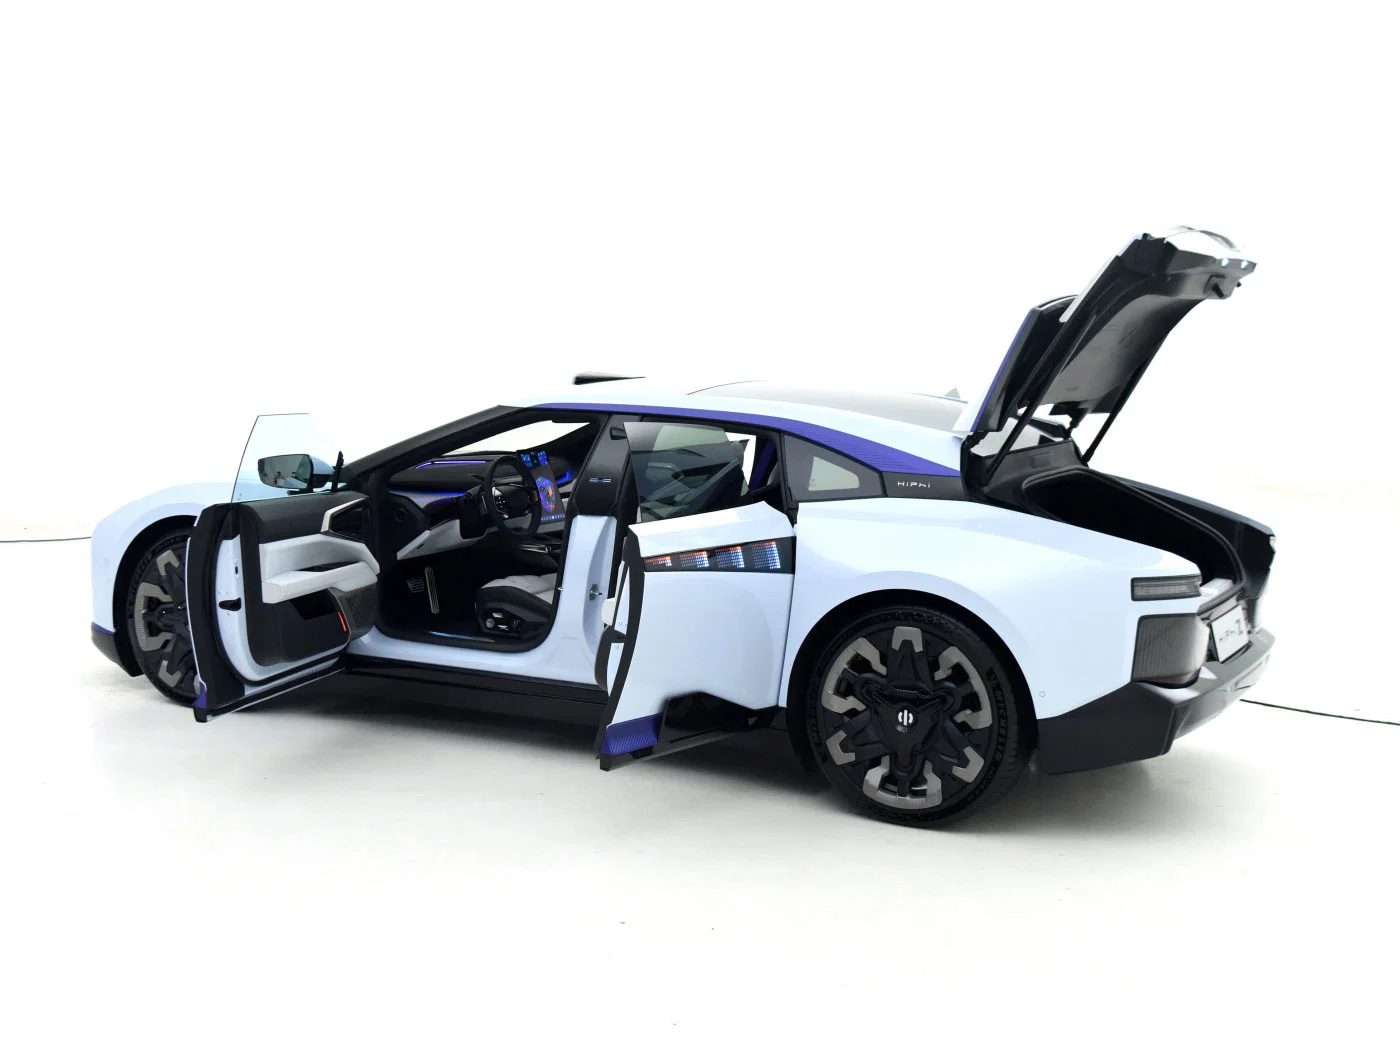 2022 novo veículo marca Luxury Hiphi X 705 km carregamento rápido Novo automóvel de alta qualidade para proteção ambiental